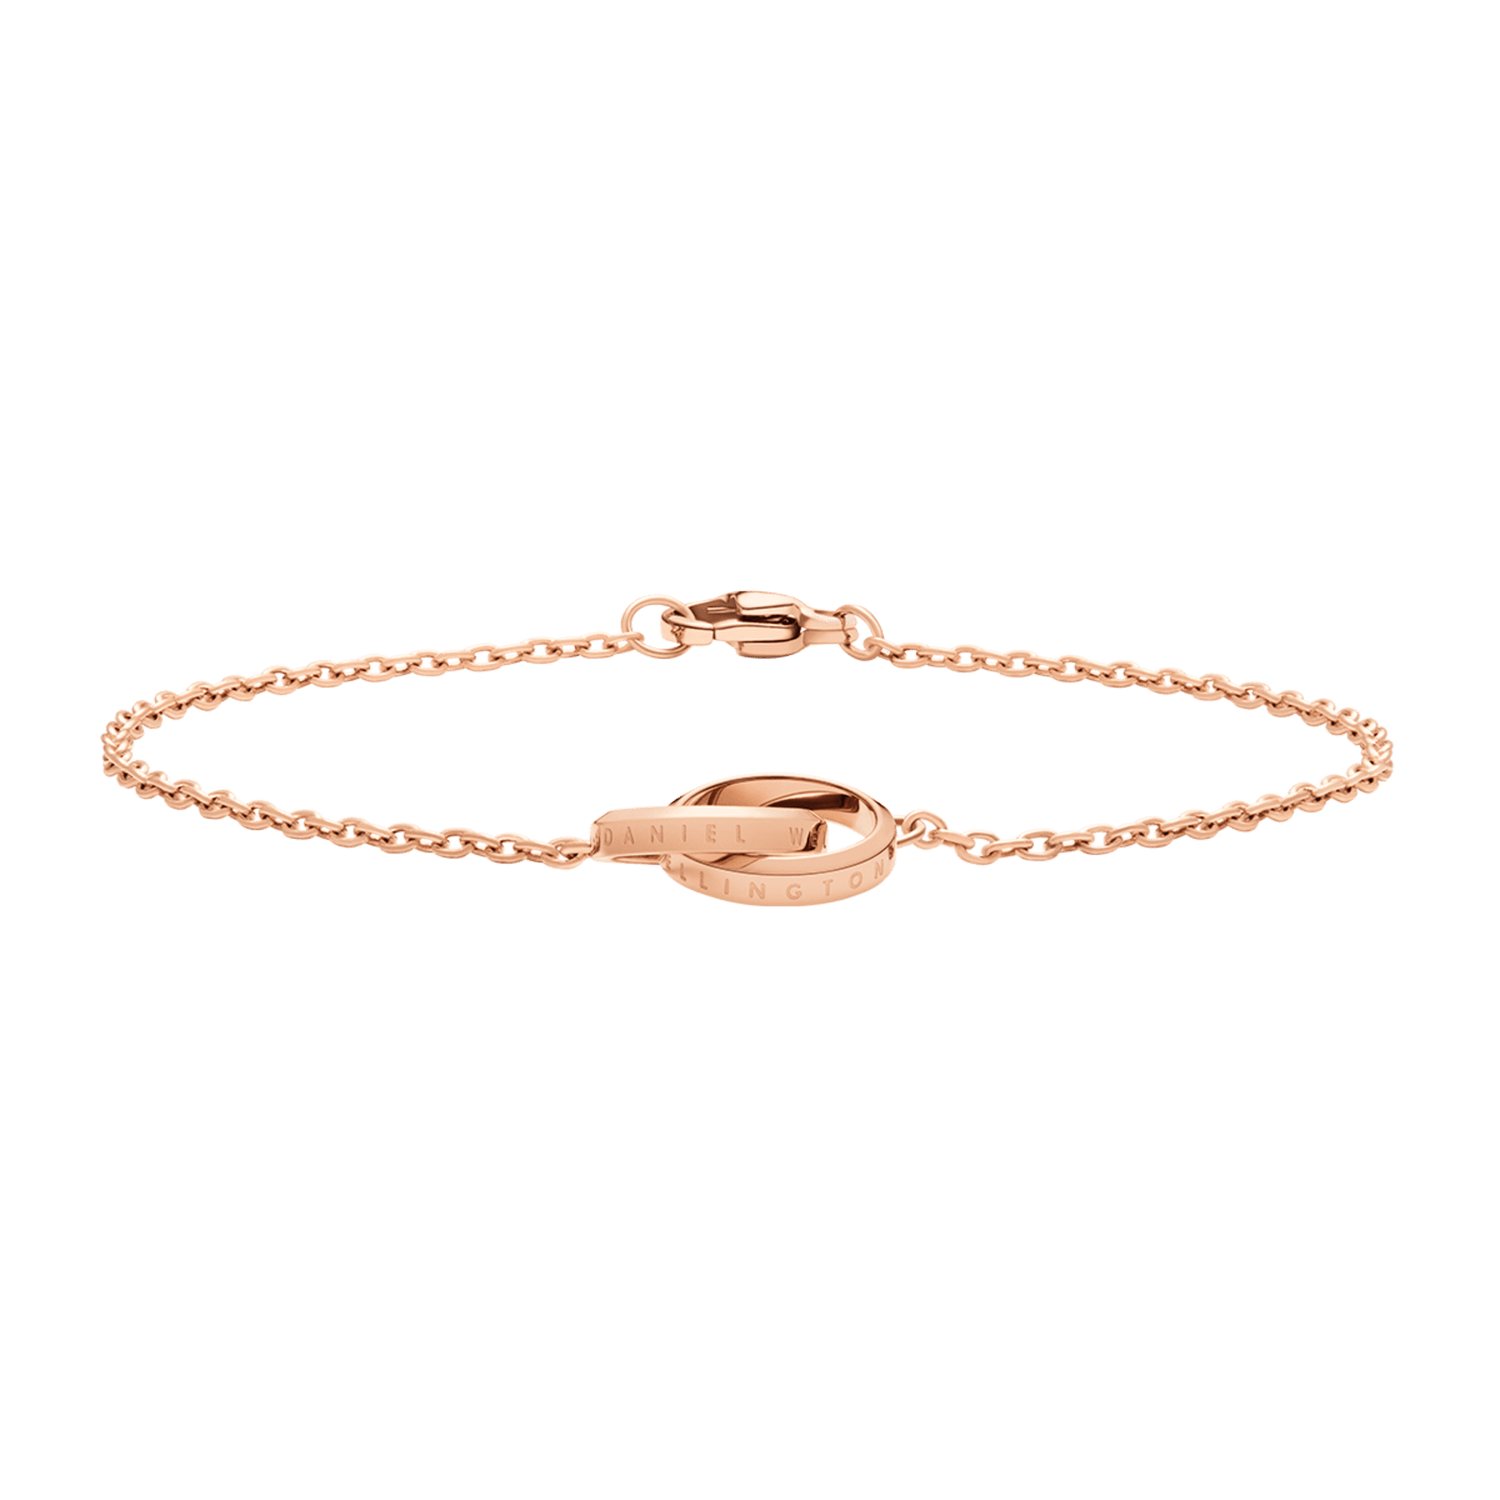 Elan Unity Bracelet